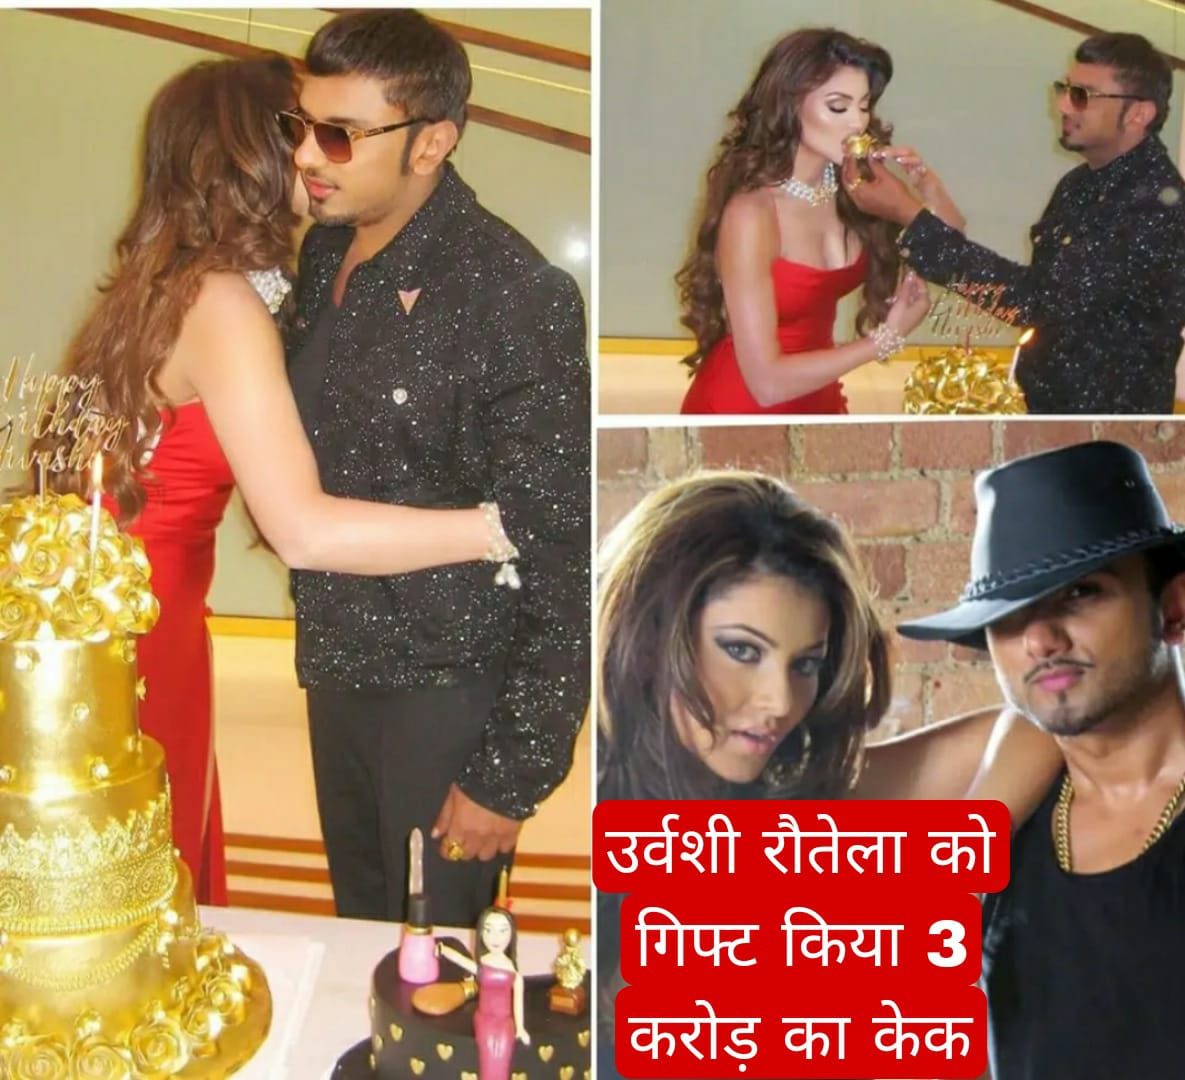 गायक हनी सिंह ने अभिनेत्री उर्वशी रौतेला को जन्मदिन पर गिफ्ट किया 3 करोड़ रुपए का केक